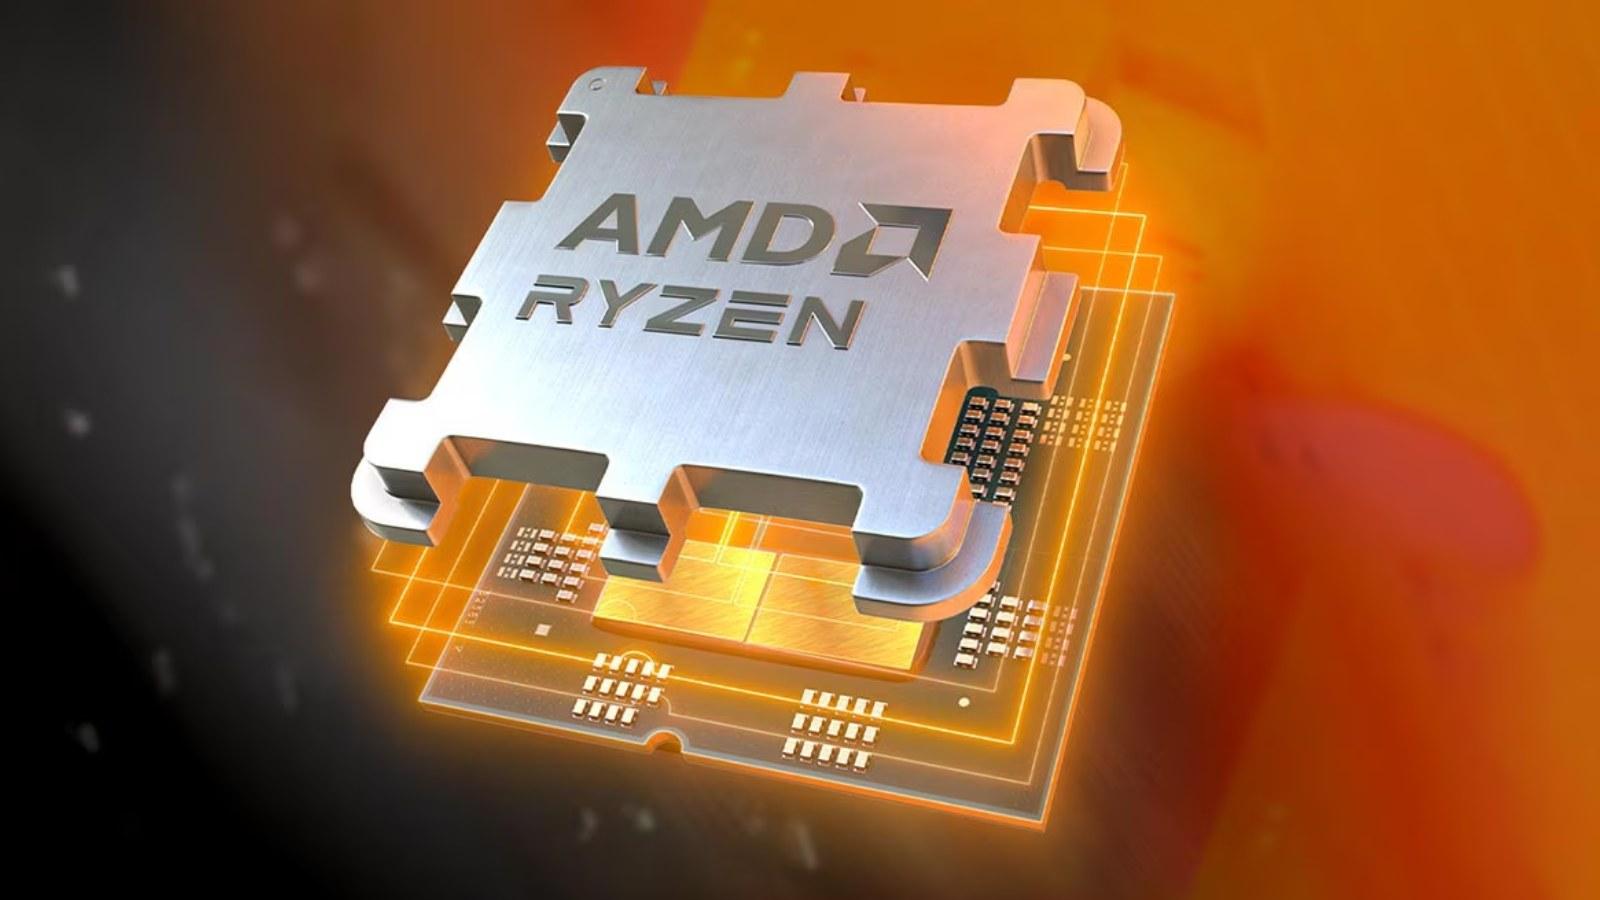 CG Render of an AMD AM5 CPU